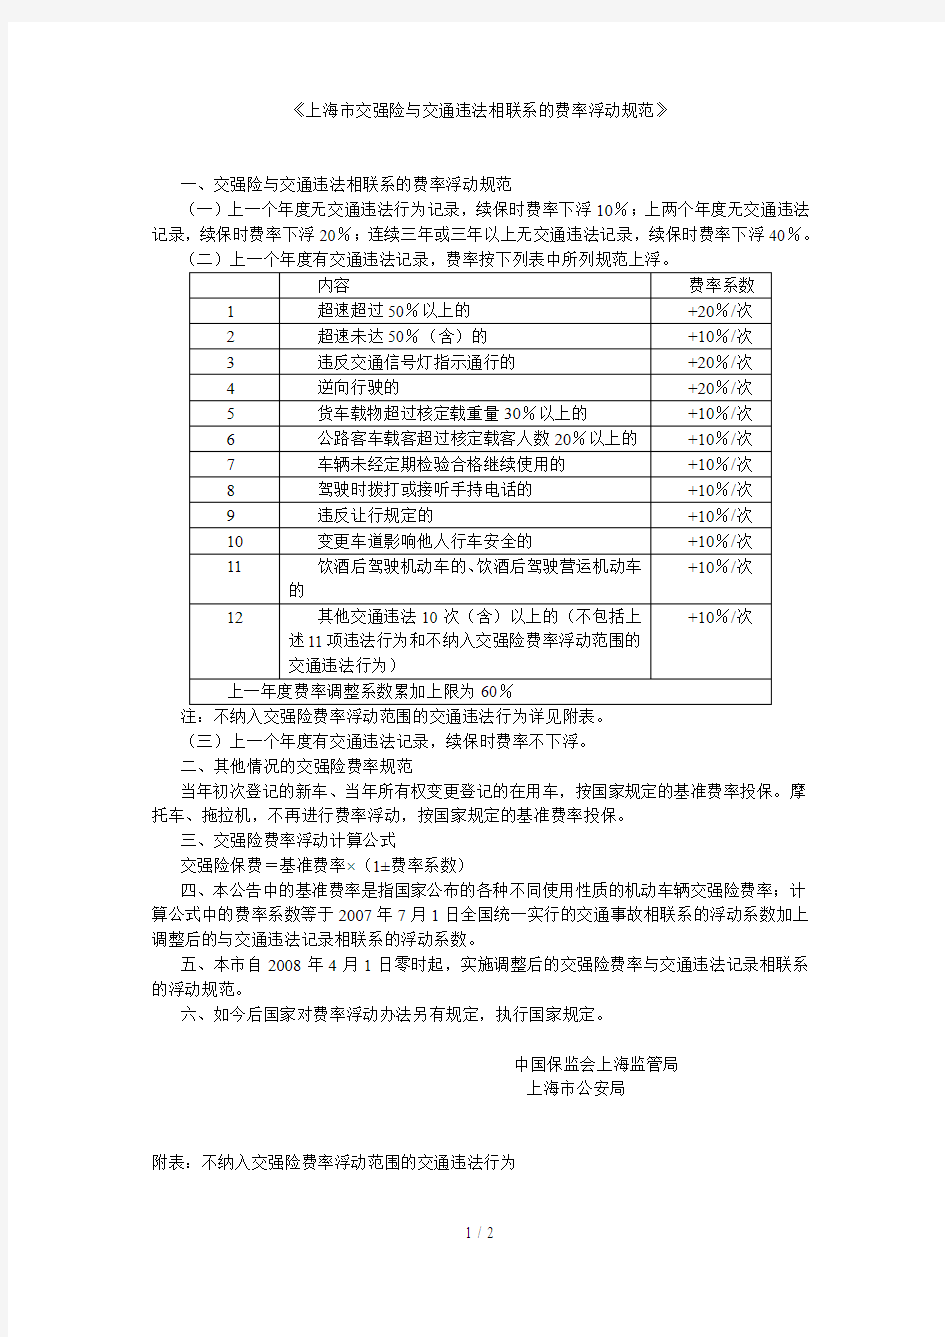 上海交强险费率浮动标准规范